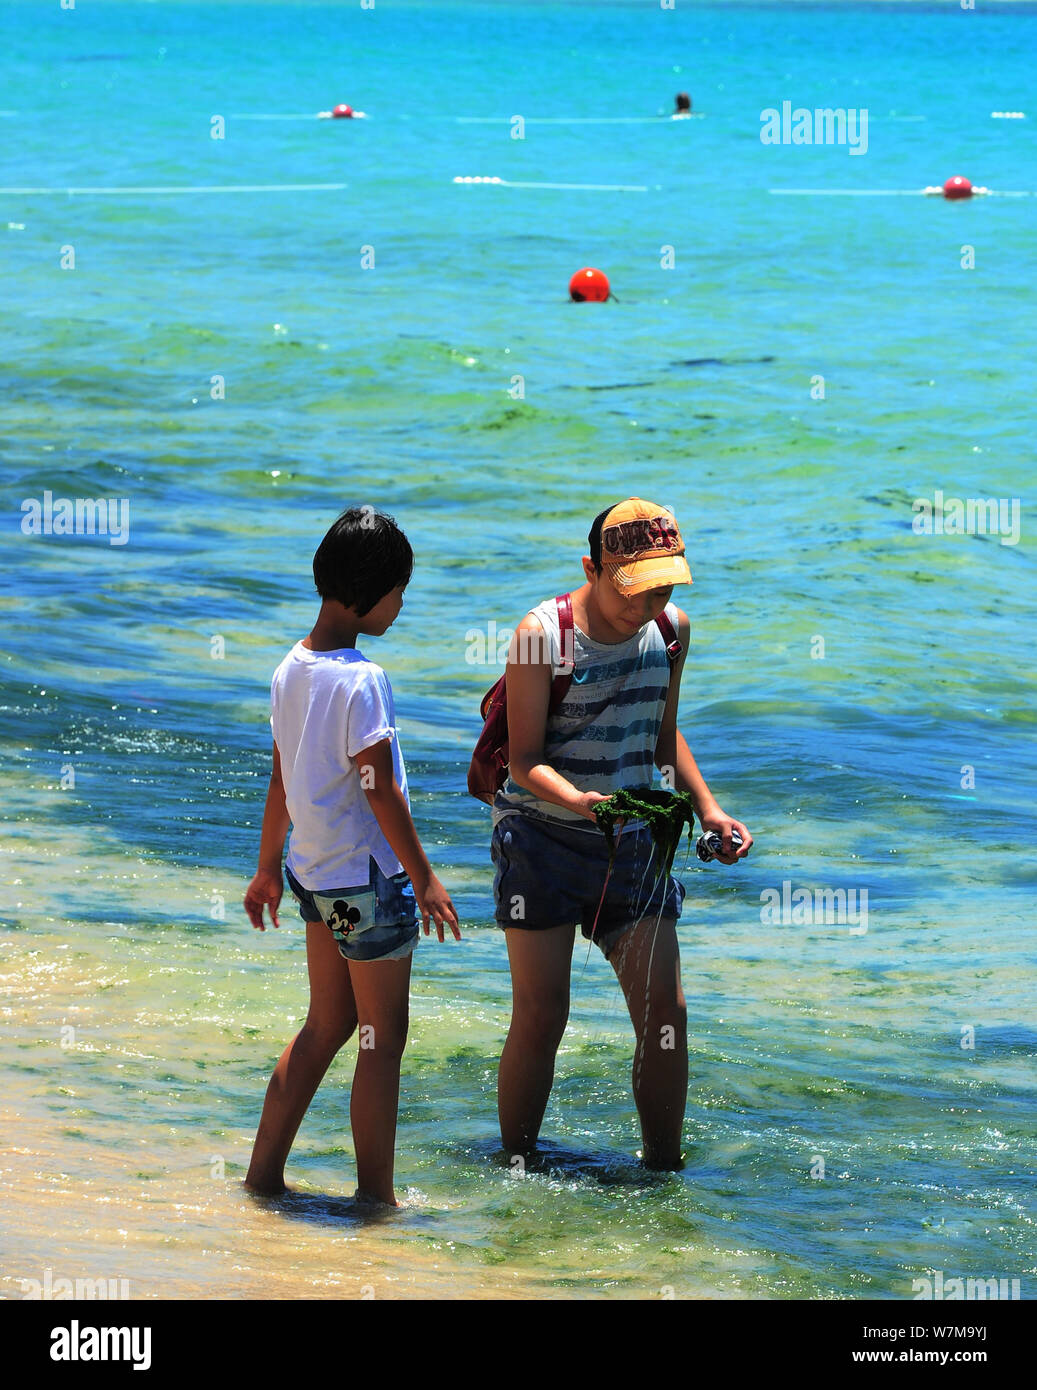 Les touristes s'amuser dans l'eau polluée avec des algues bleu-vert à un beach resort dans la ville de Sanya, province de Hainan en Chine du sud, le 21 août 2017. Banque D'Images